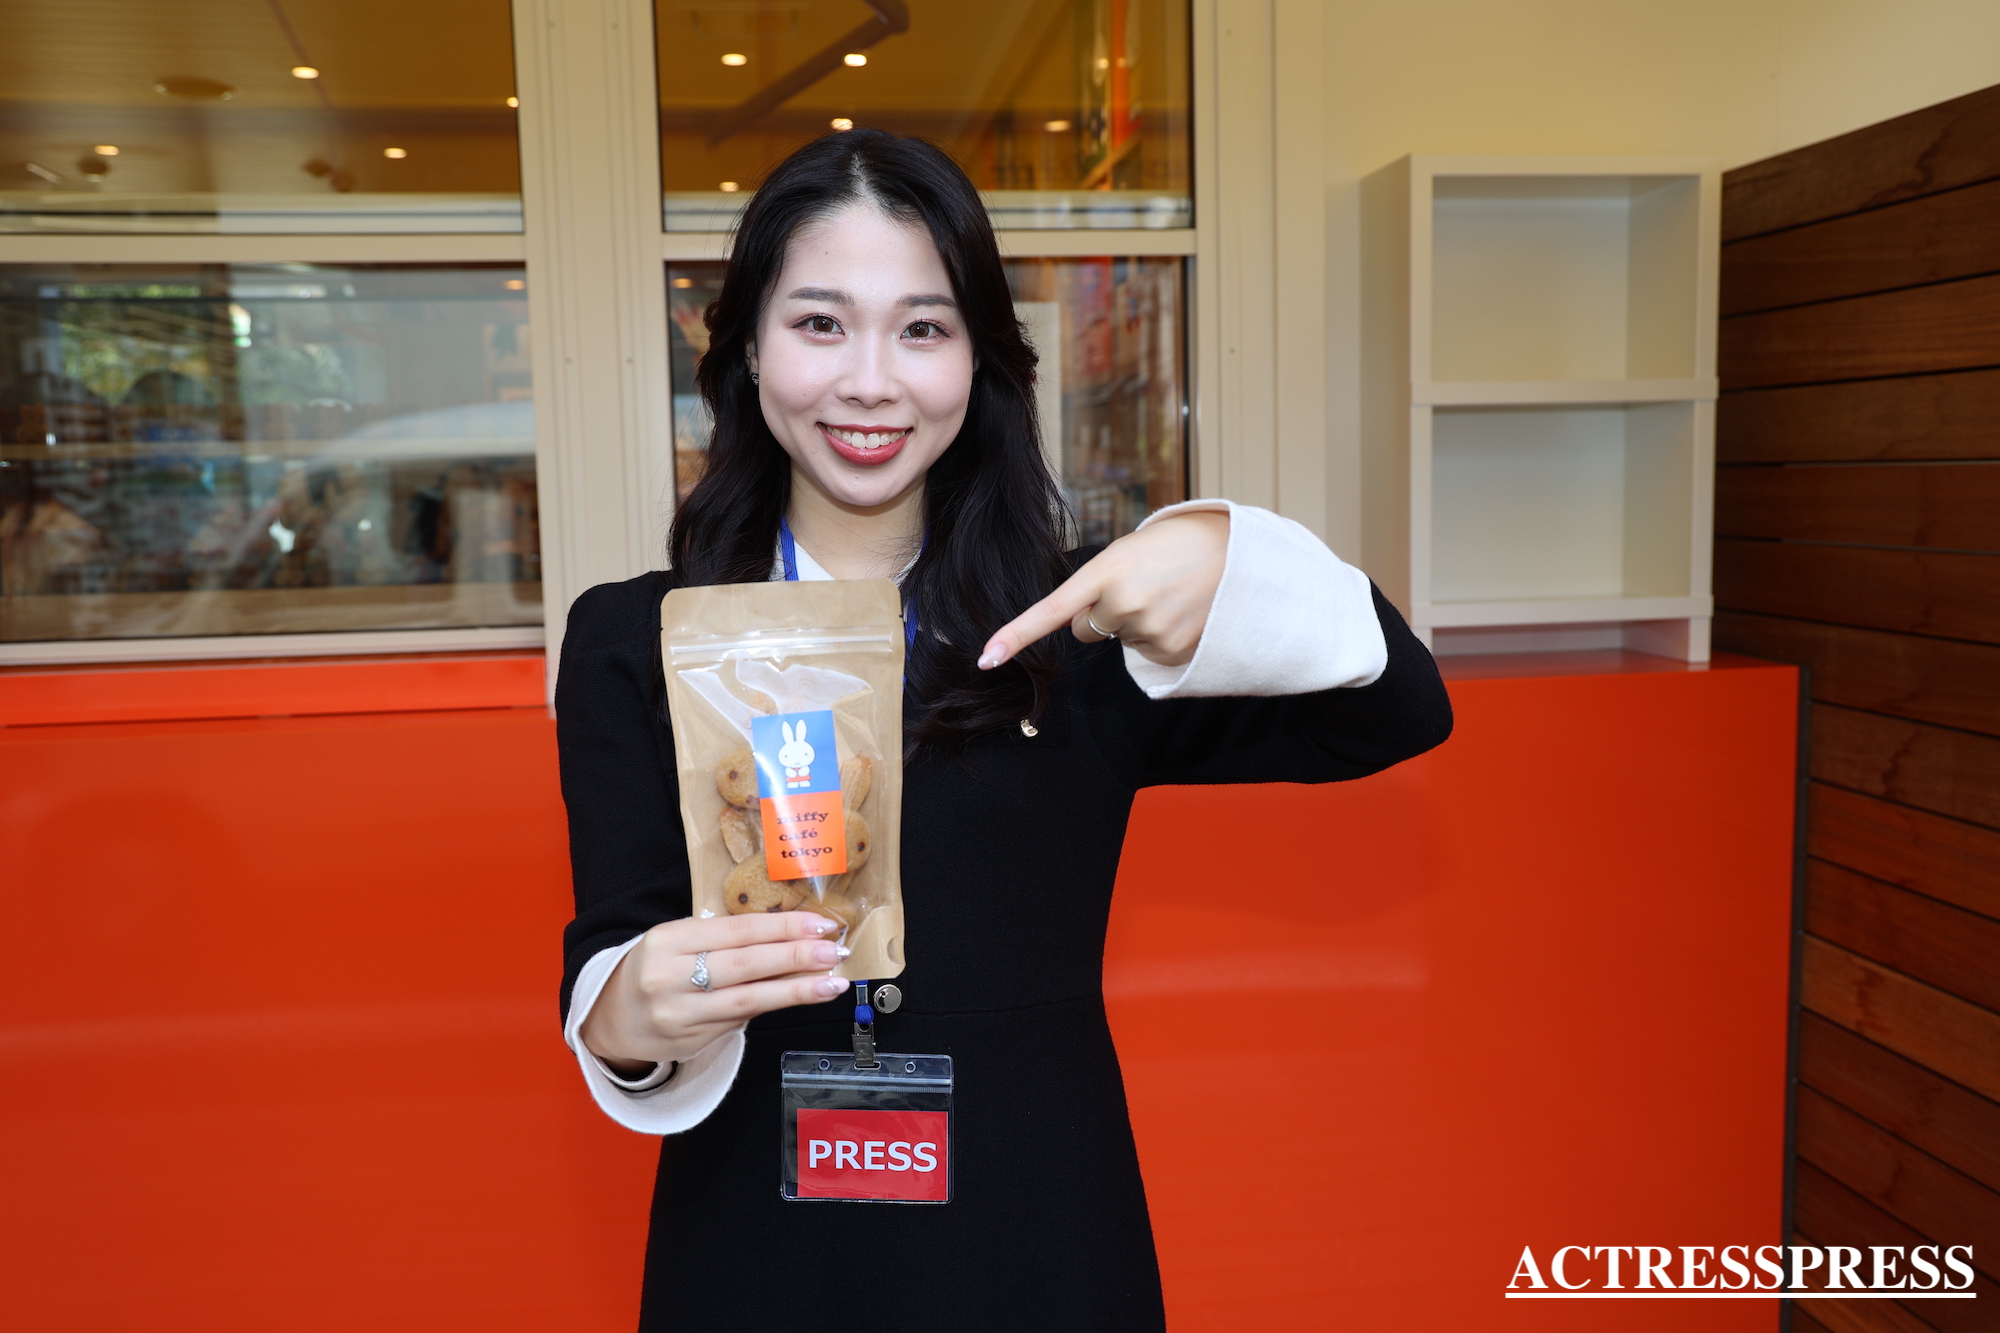 國近奈旺（ACTRESS PRESS REPORTER（アクトレスプレス リポーター）in miffy café tokyo（ミッフィーカフェ トーキョー）​​代官山駅